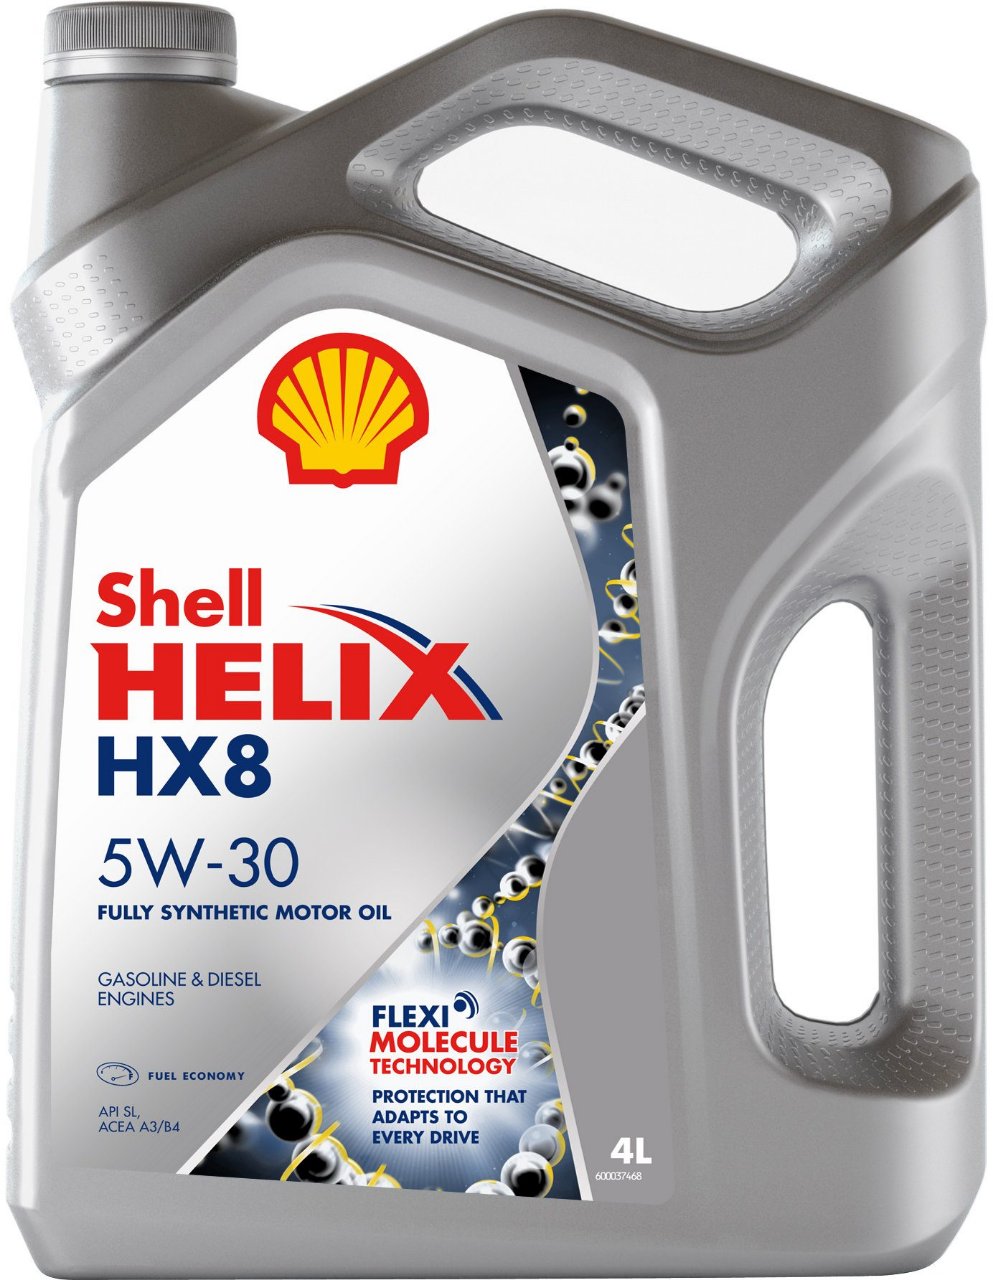 helix-hx8-syn-5w30.jpeg